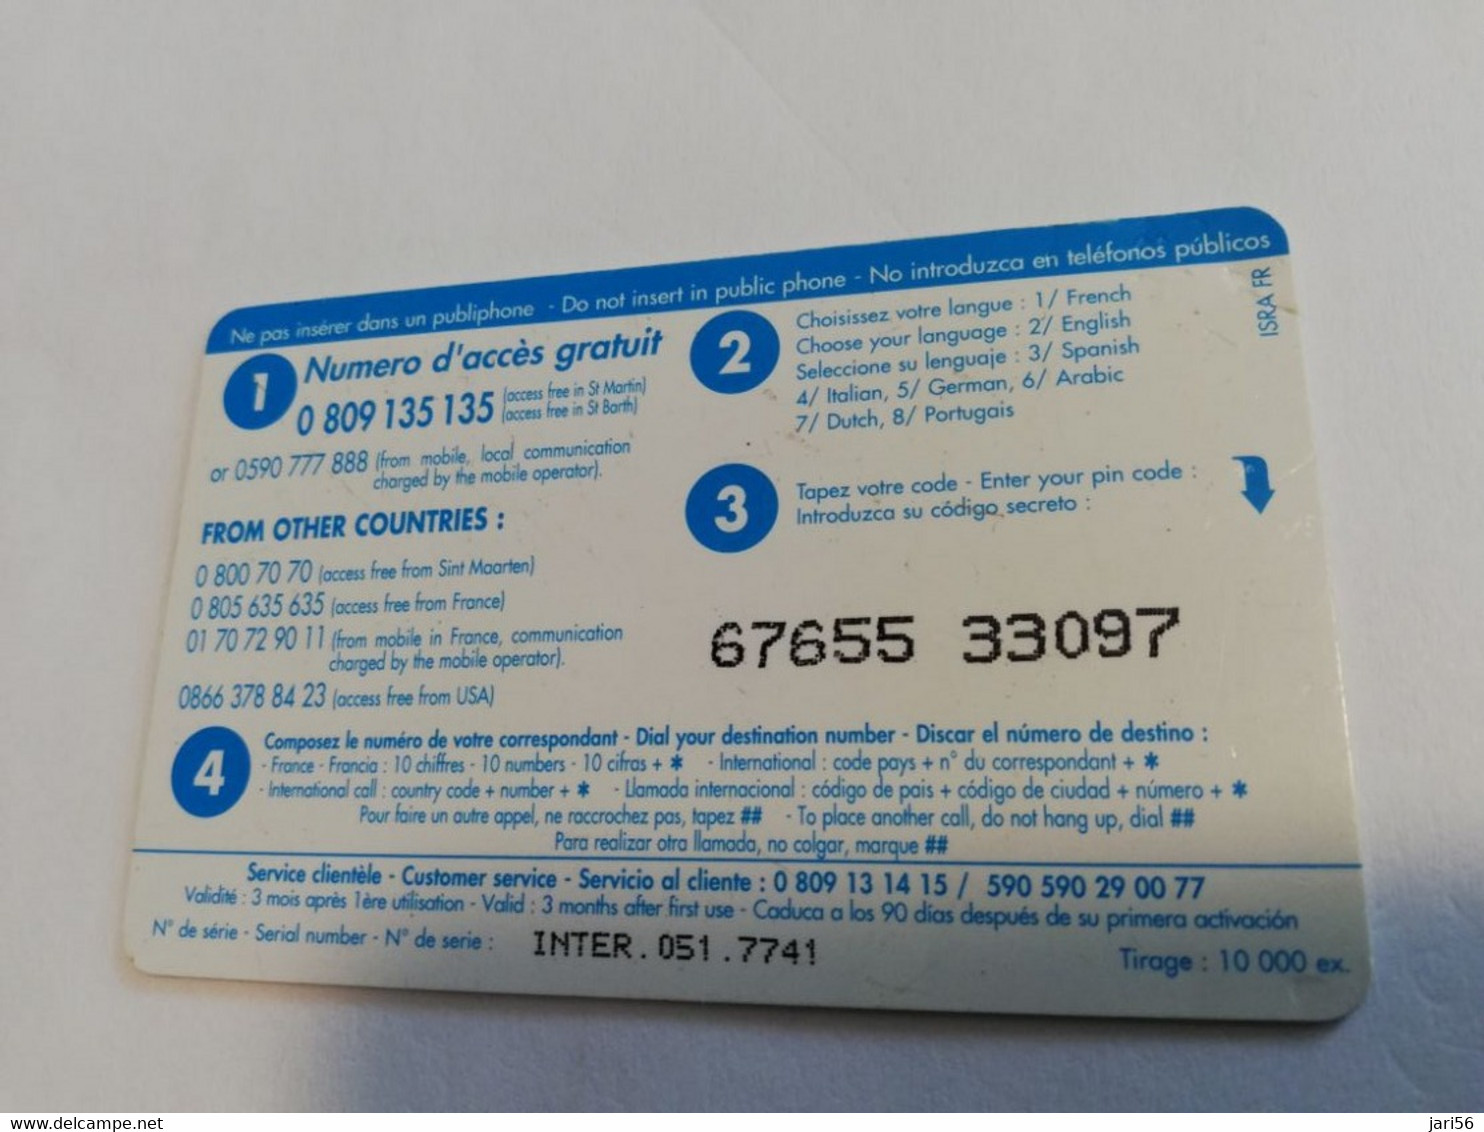 ST MARTIN / INTERCARD  8 EURO  HIBISCUS    NO 051   Fine Used Card    ** 6563 ** - Antillen (Französische)